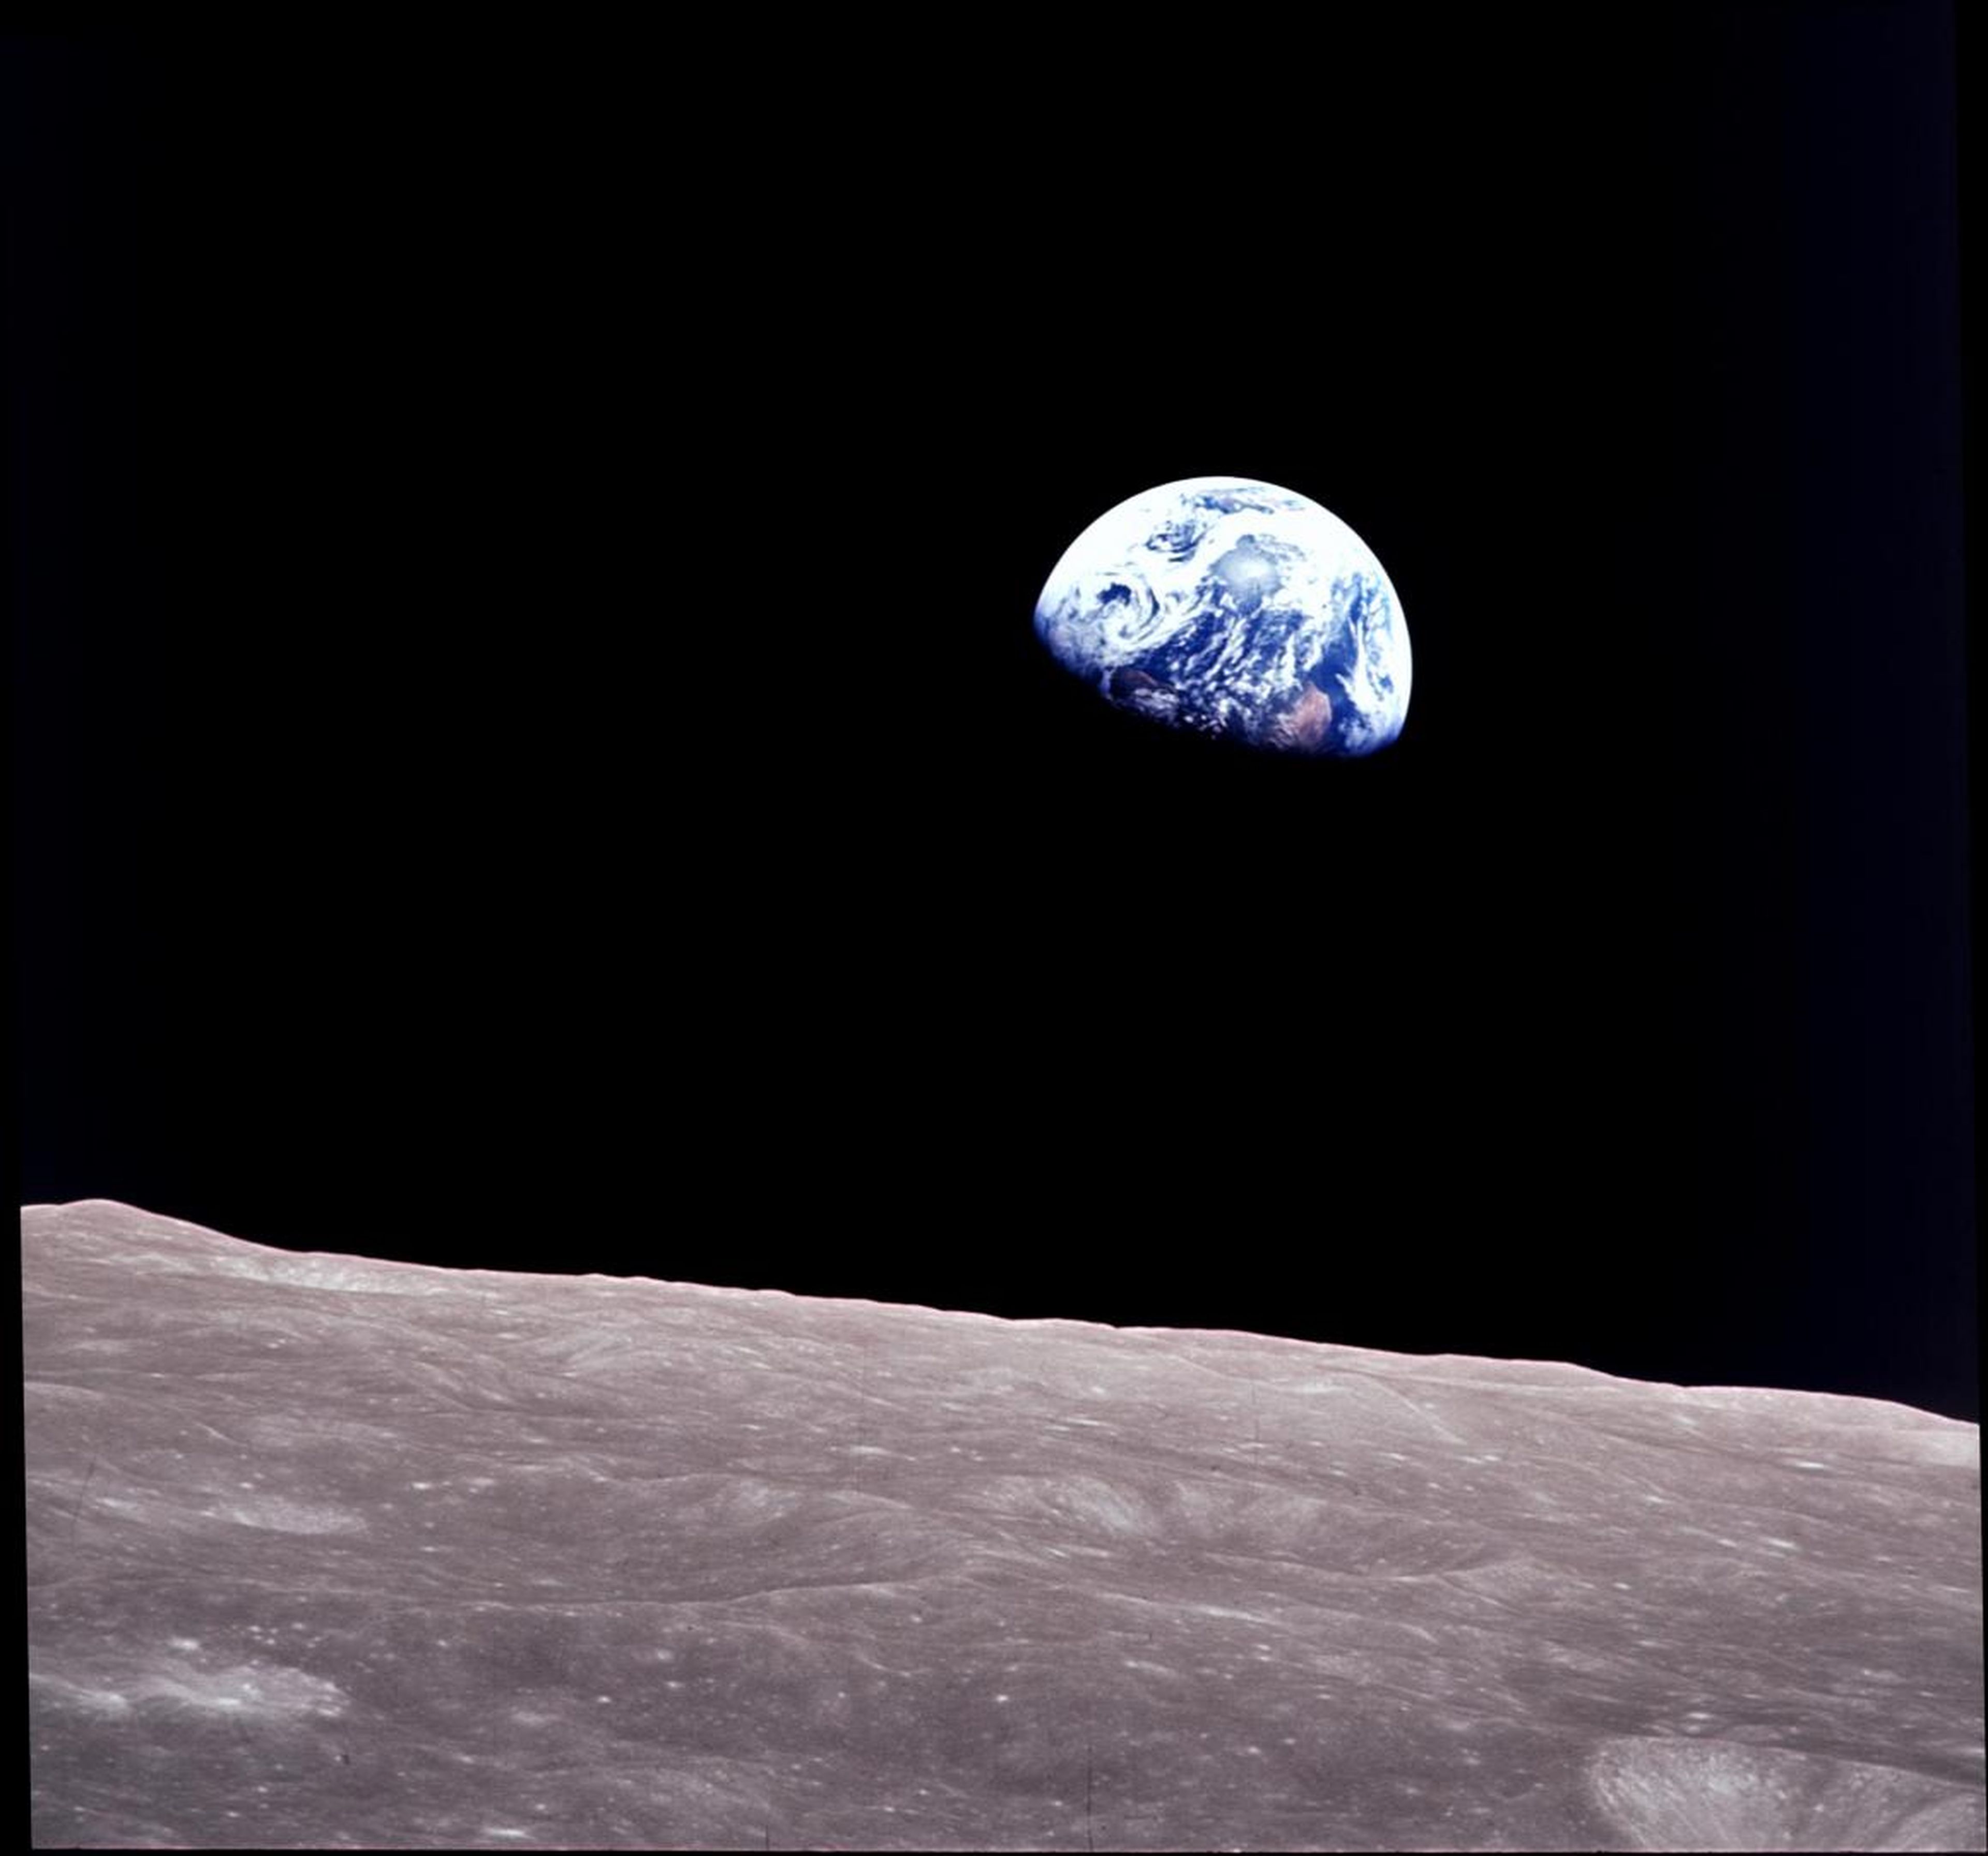 La Tierra se eleva sobre el horizonte lunar en esta imagen de teleobjetivo captada desde la nave espacial Apolo 8, el 22 de diciembre de 1968.